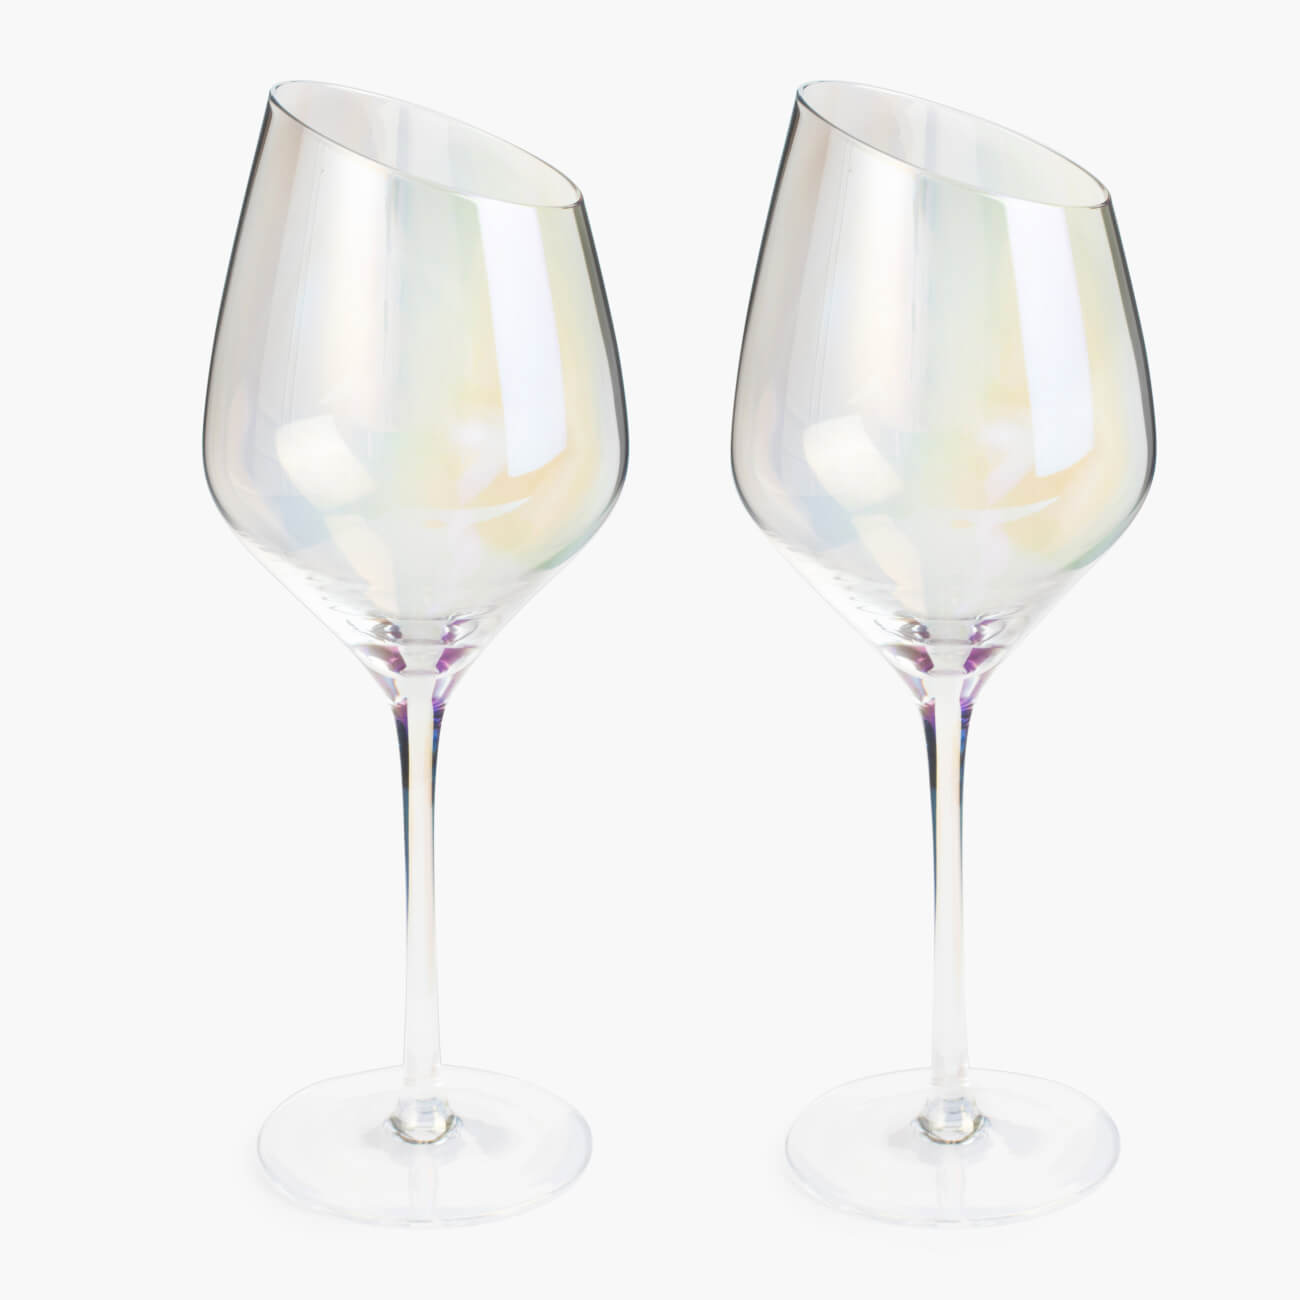 Бокал для белого вина, 460 мл, 4 шт, стекло, перламутр, Charm L polar бокал для красного вина 560 мл 4 шт стекло перламутр charm l polar